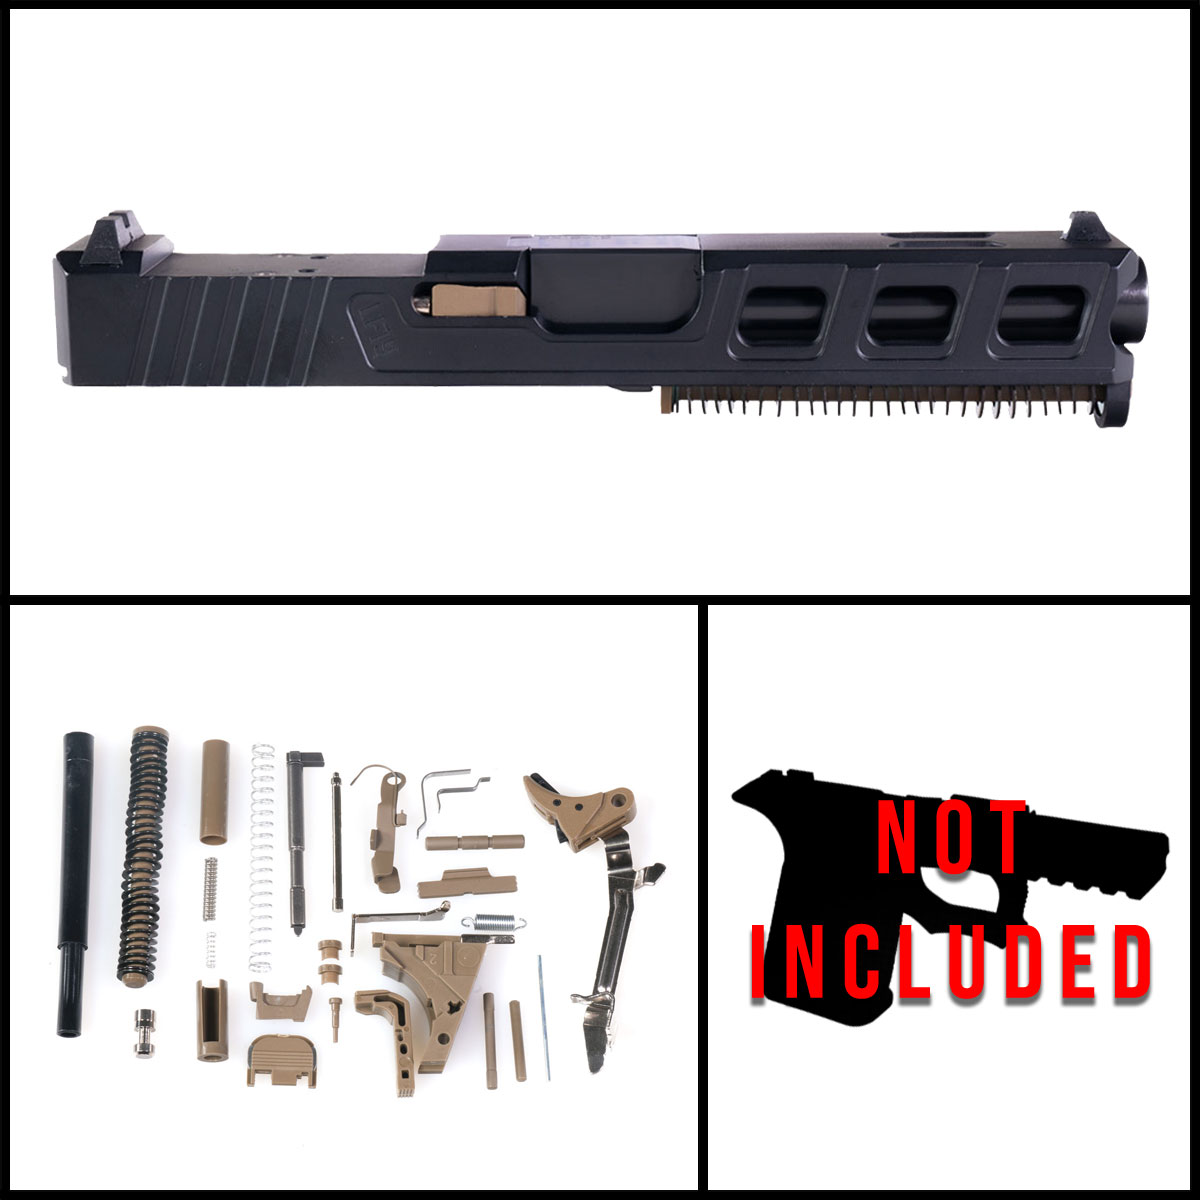 DTT 'Macadam' 9mm Full Pistol Build Kit (Everything Minus Frame) - Glock 19 Gen 1-3 Compatible